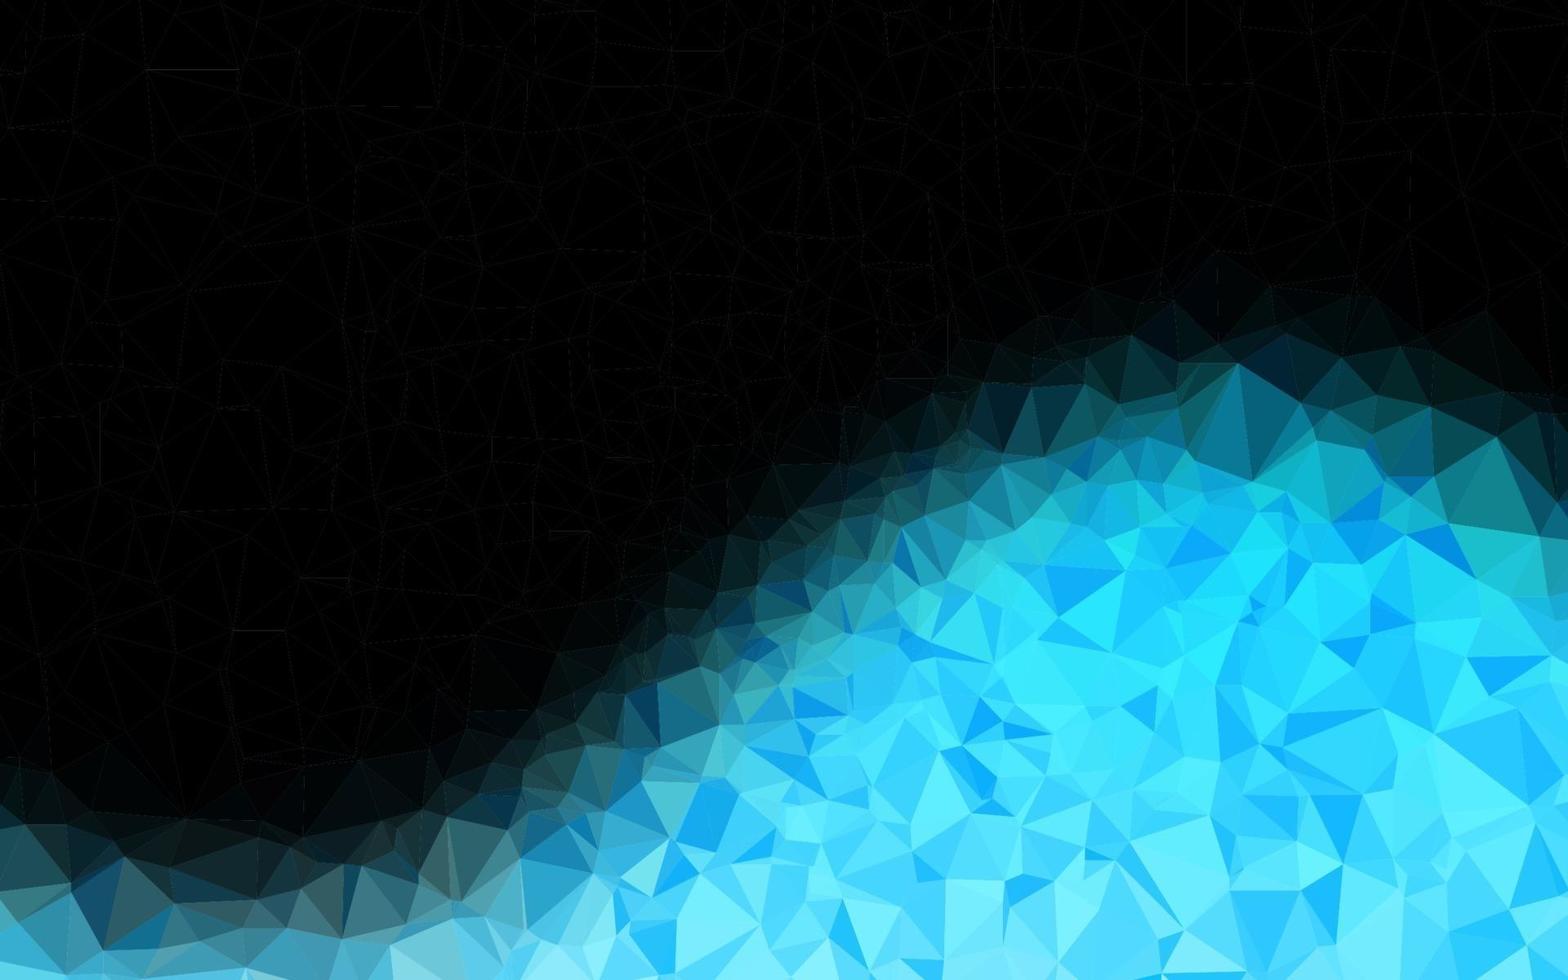 layout poligonal abstrato de vetor azul claro.